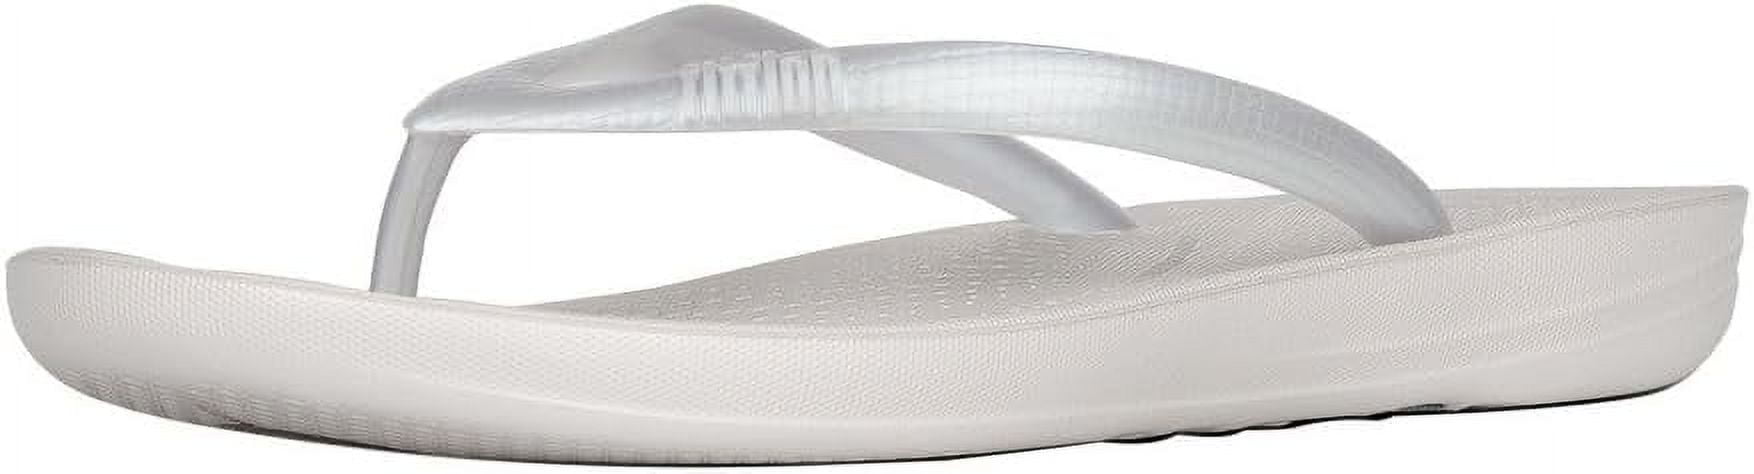 FitFlop Women's Iqushion Ergonomic Flip-Flops Sandal (size 9)